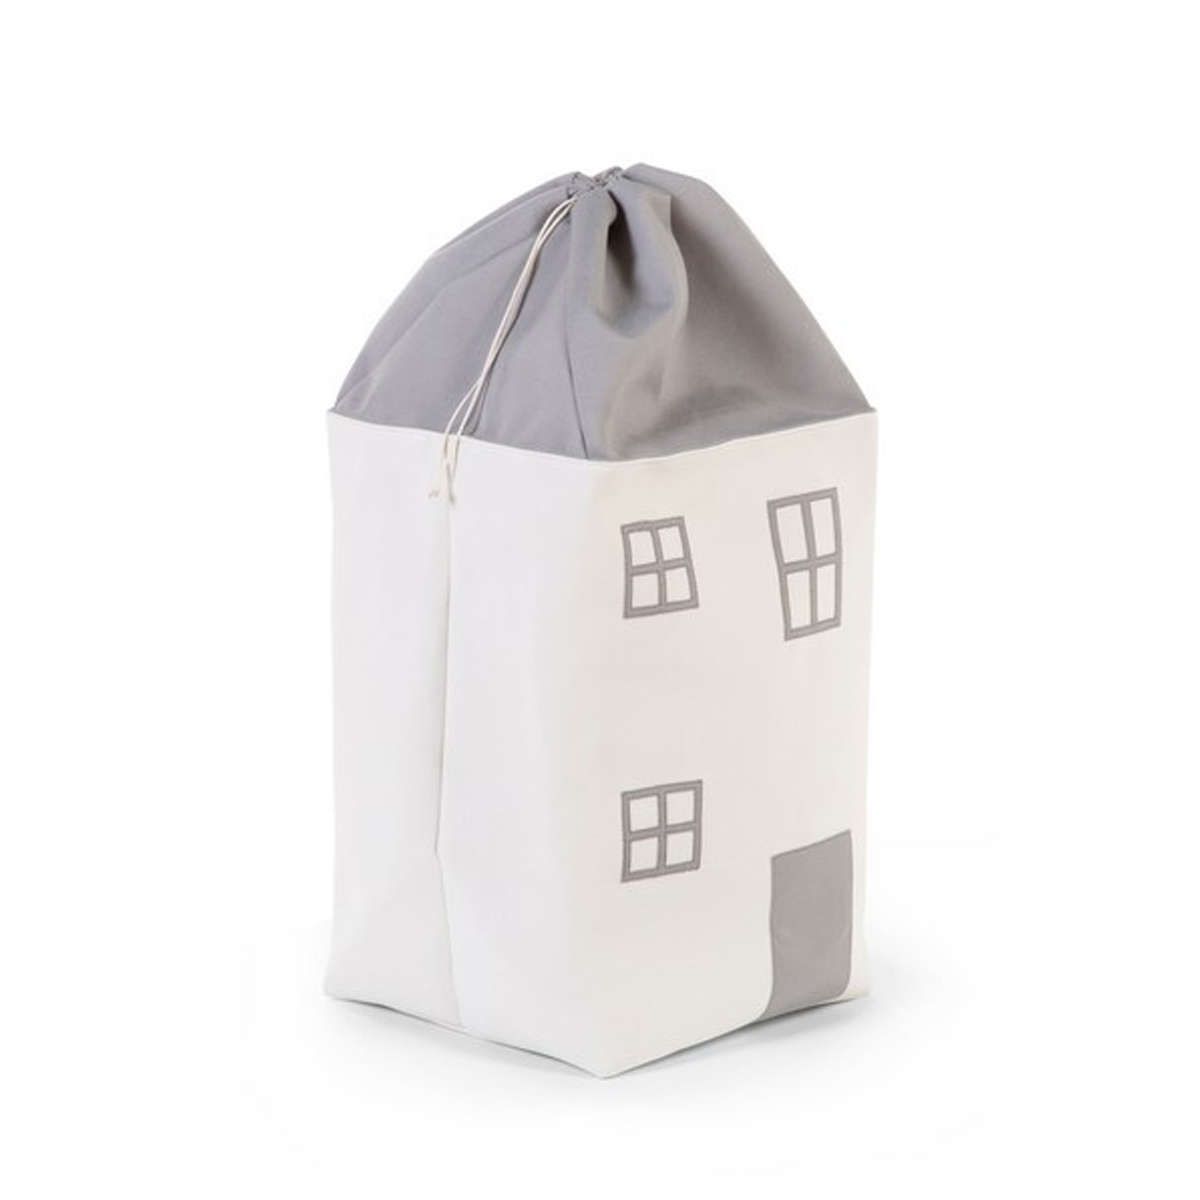 Σάκος παιχνιδιών Toy Box House grey-off white Childhome